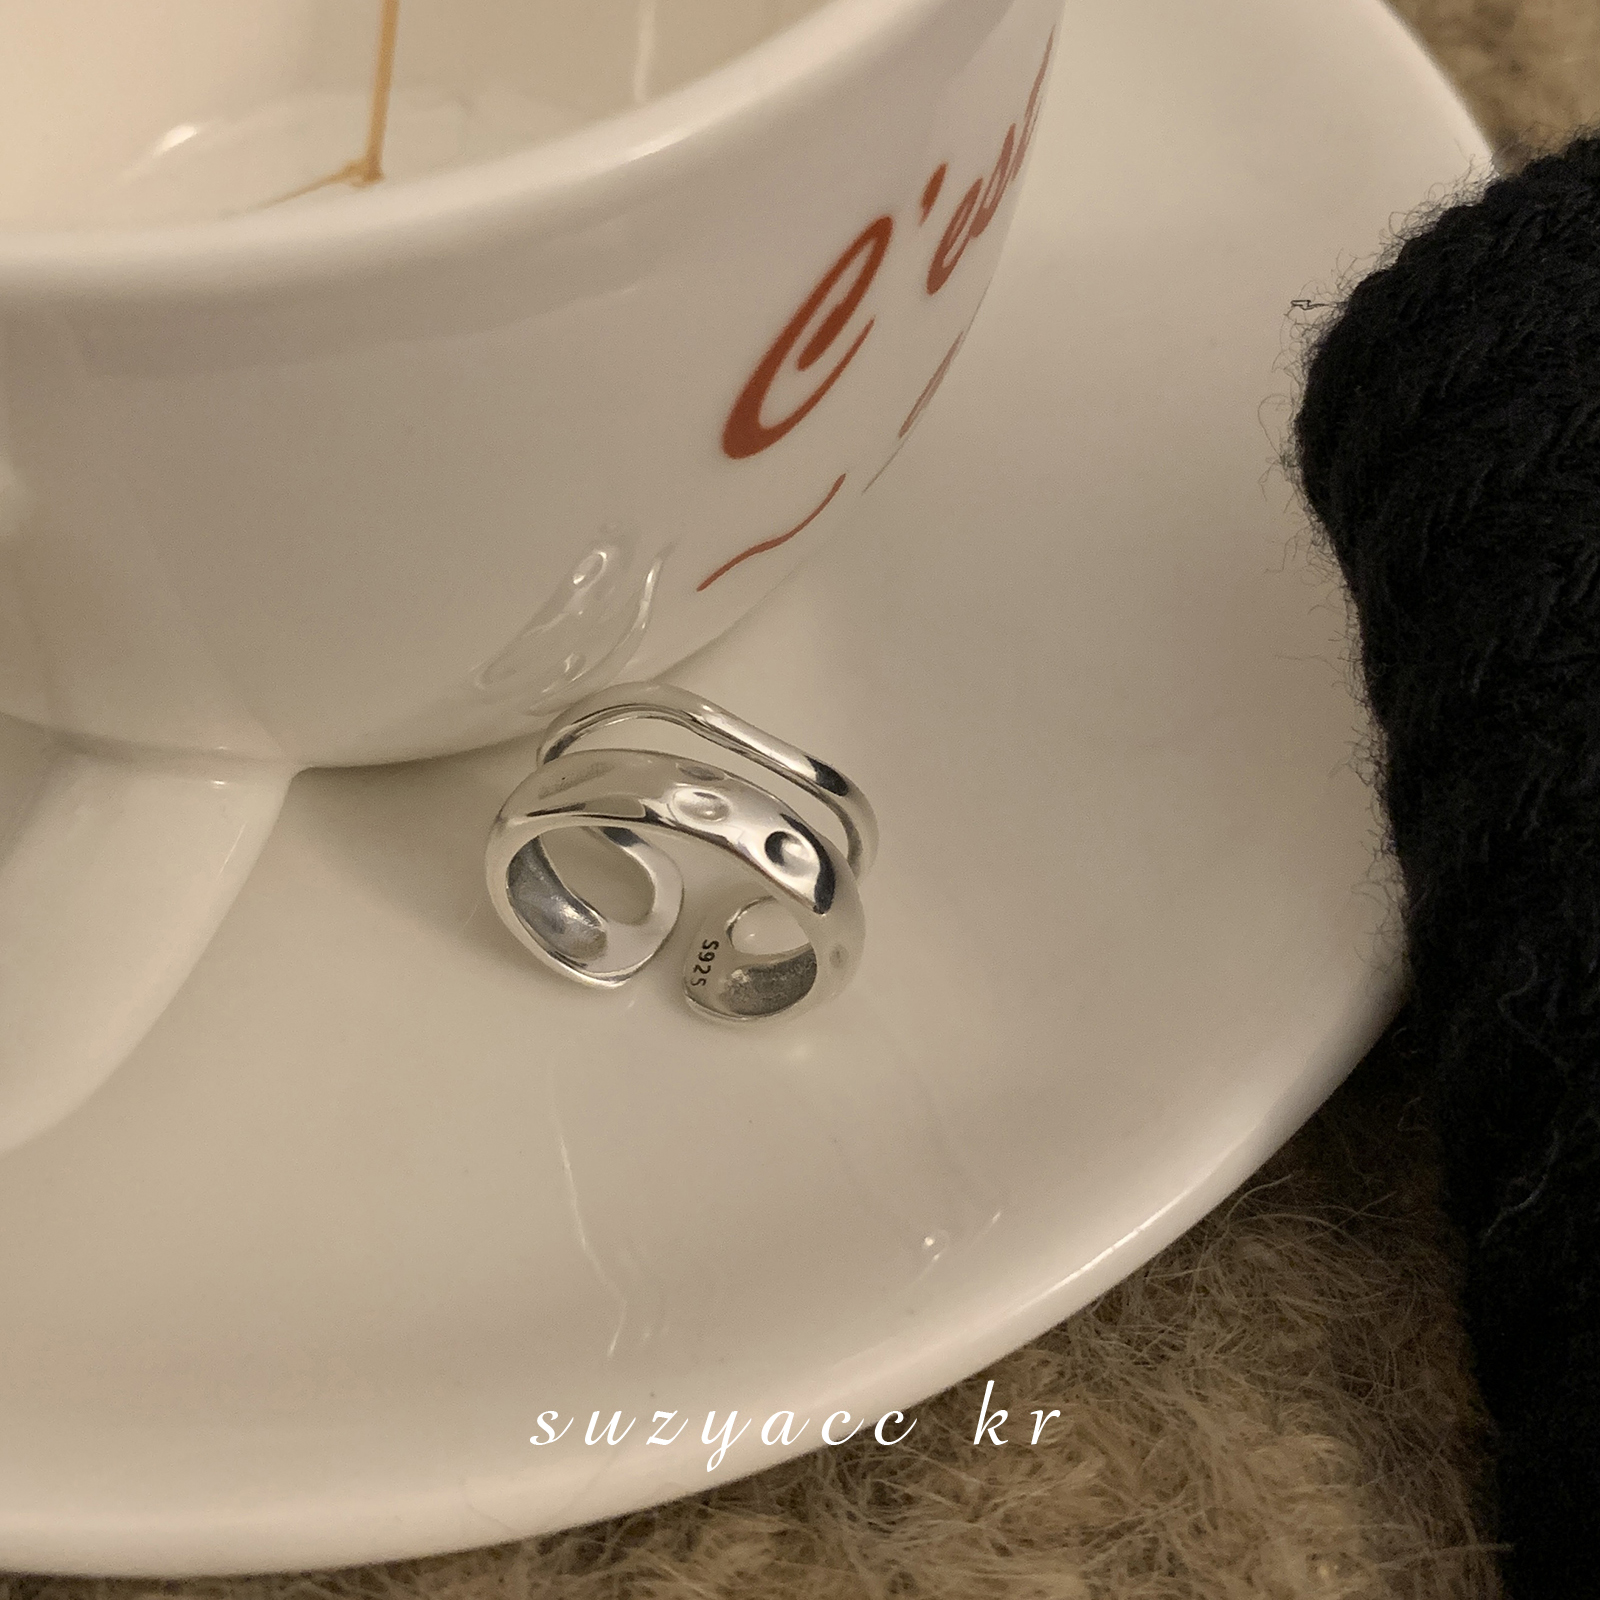 suzyacc kr简约小众设计感纯银捶打纹双层戒指女个性时尚食指戒-图2